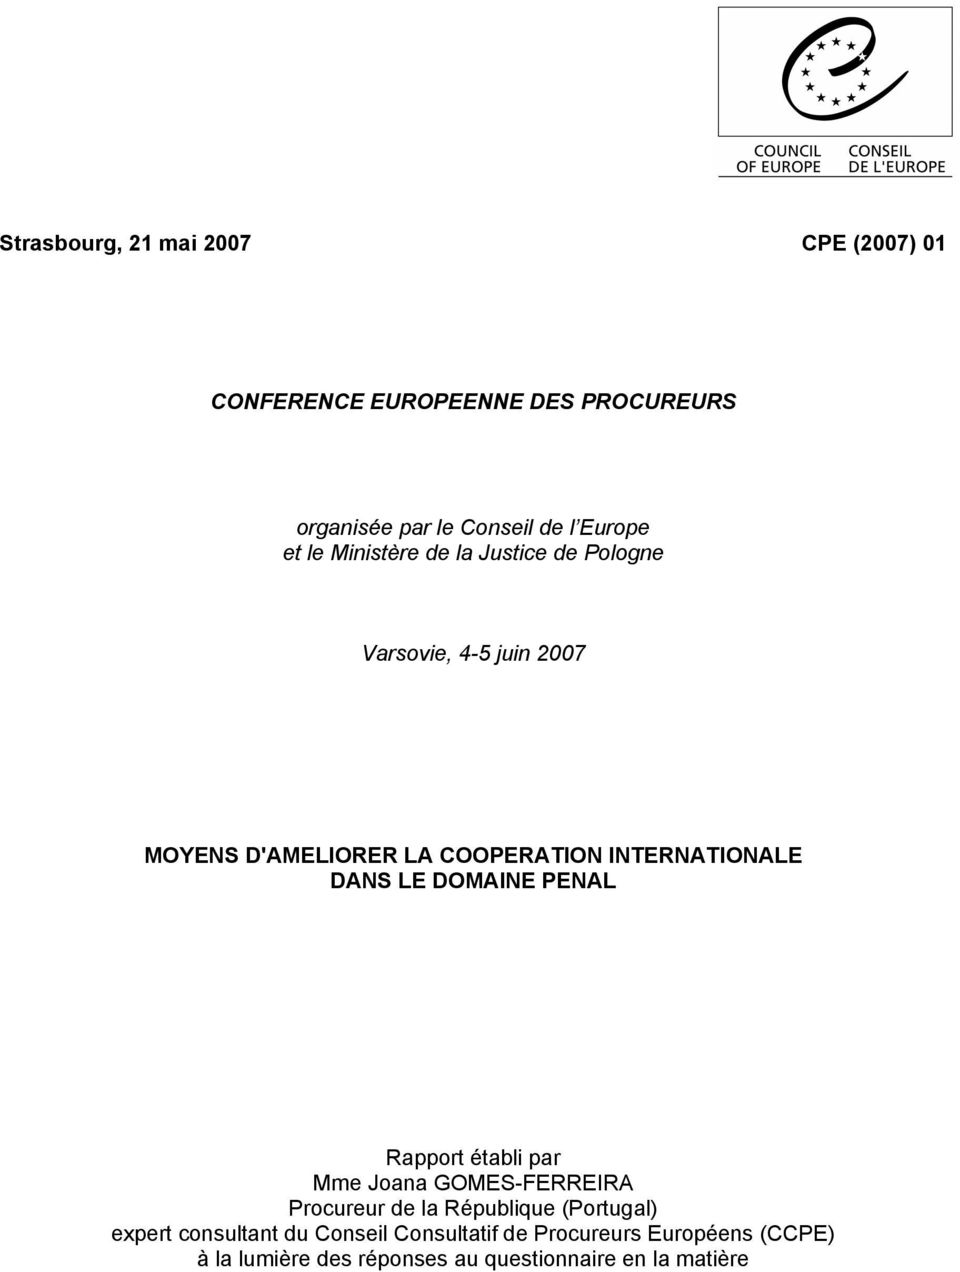 DANS LE DOMAINE PENAL Rapport établi par Mme Joana GOMES-FERREIRA Procureur de la République (Portugal) expert